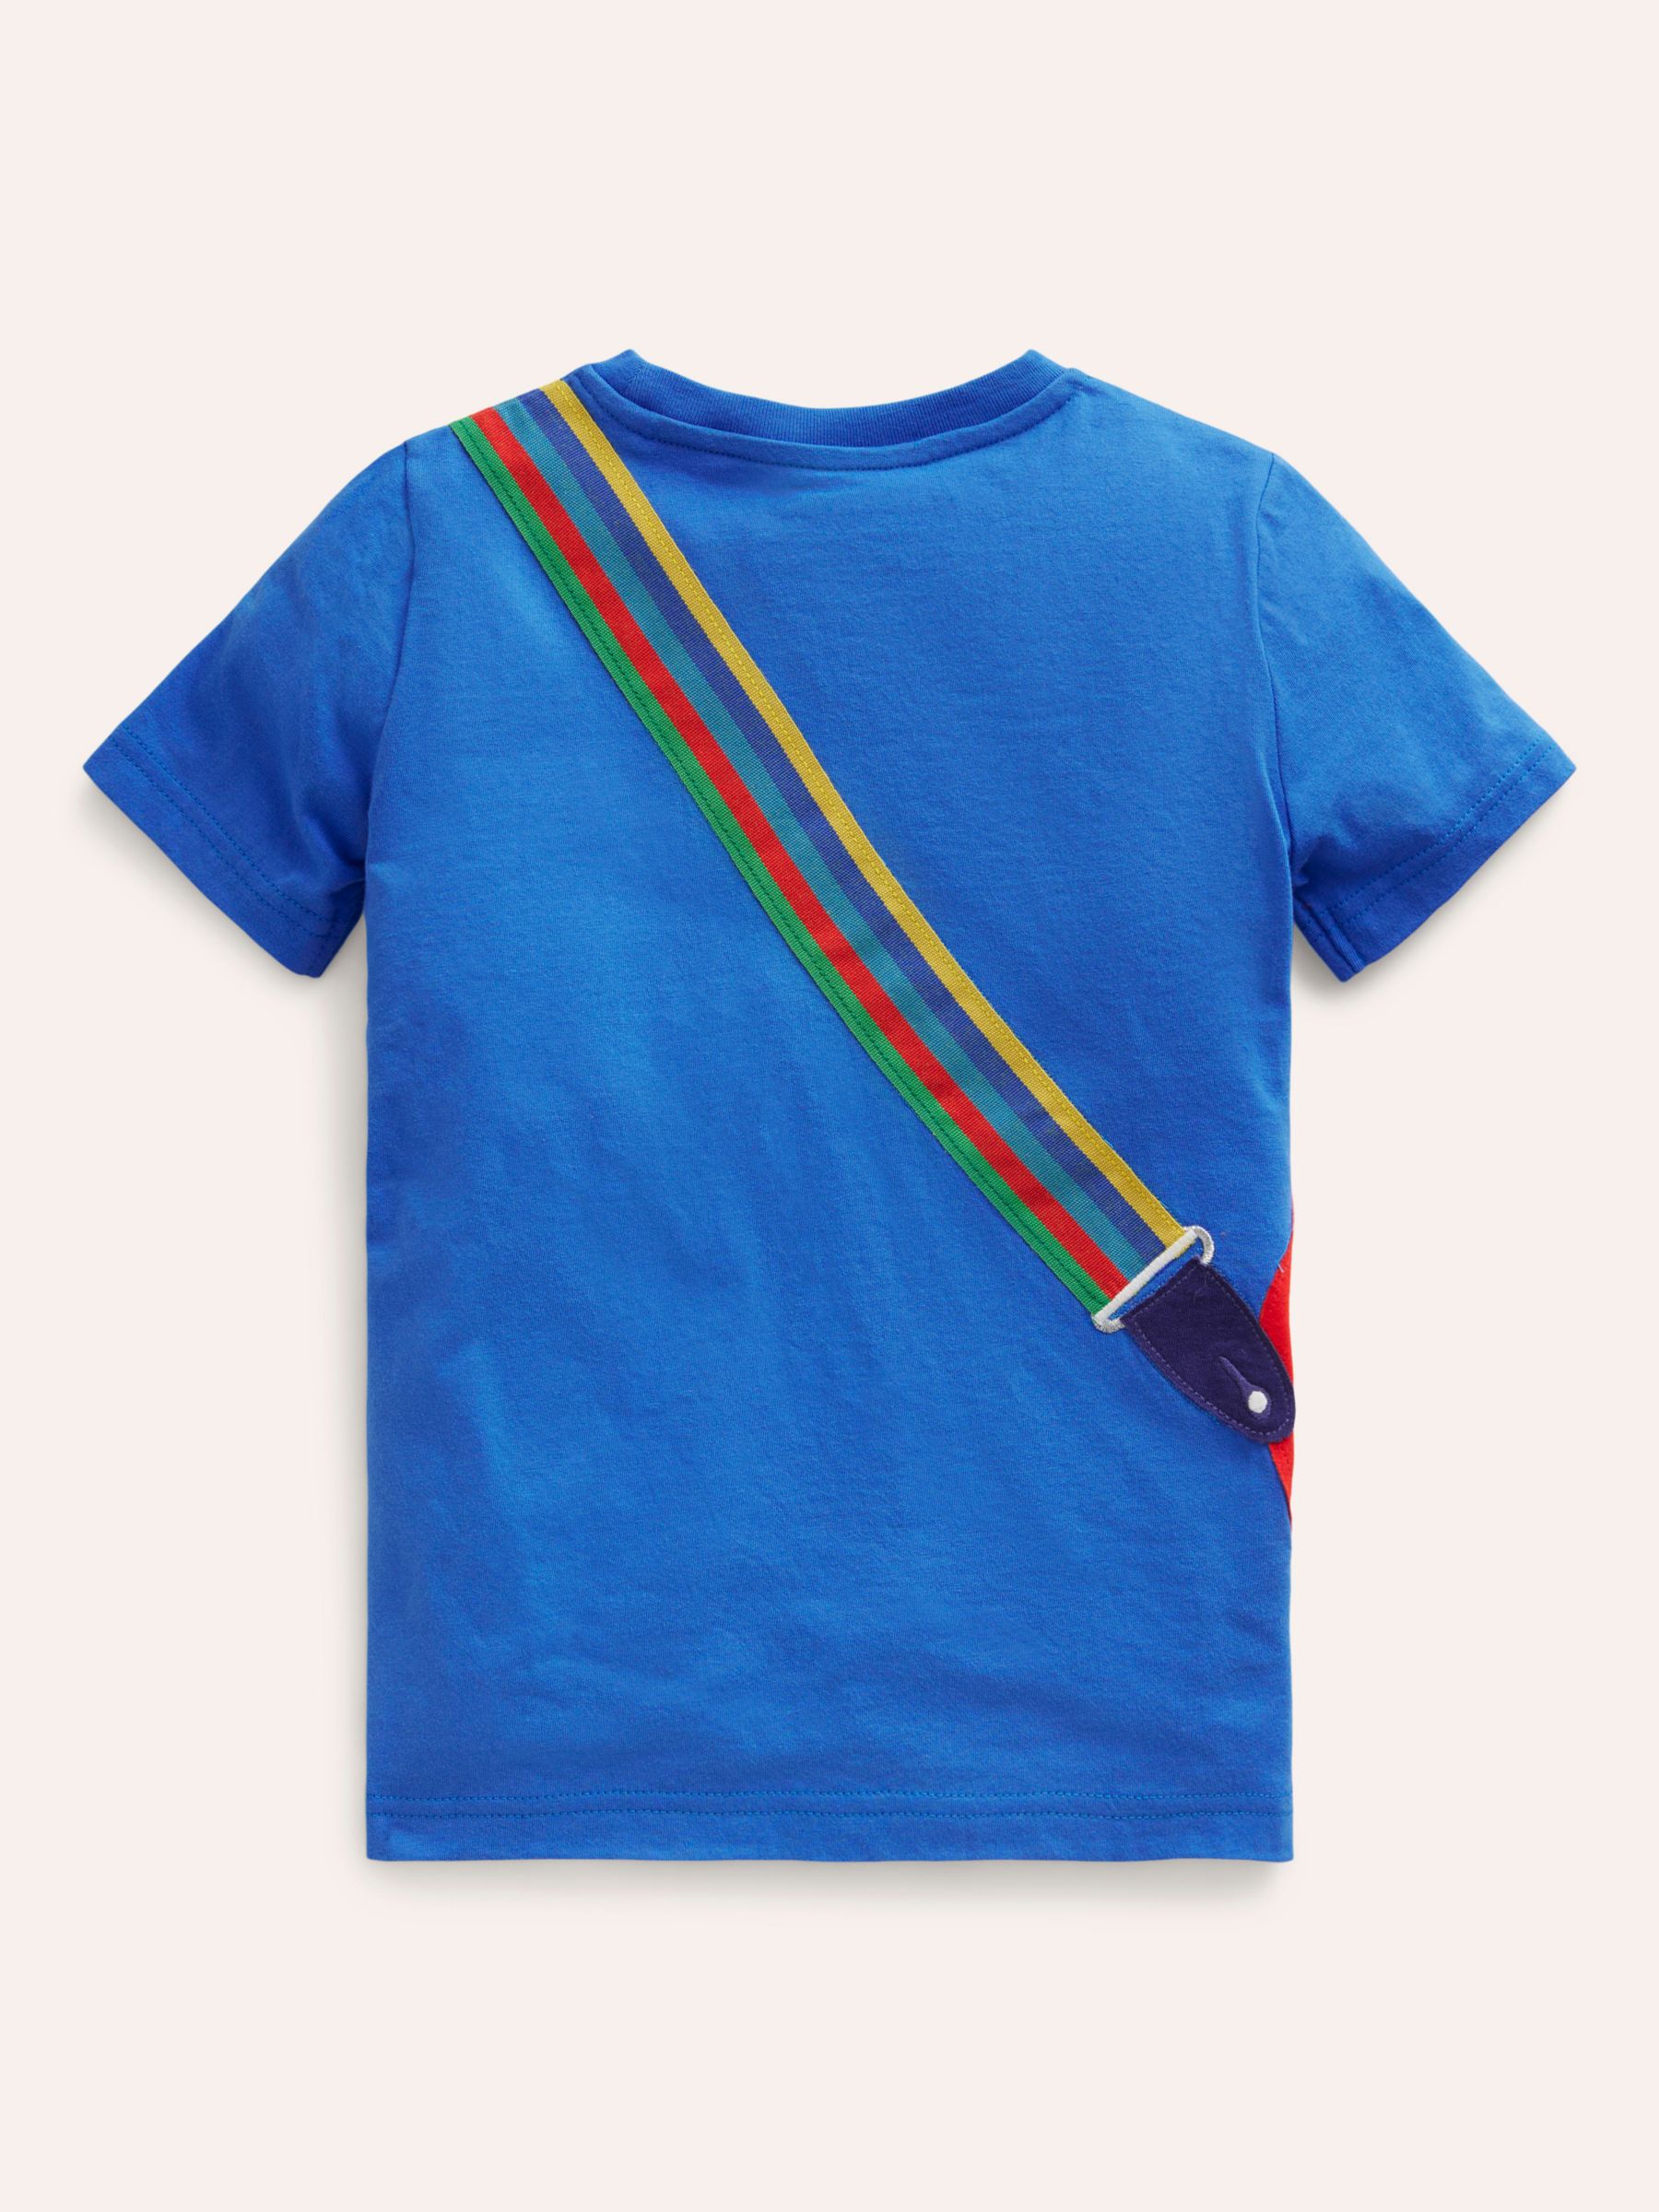 Mini Boden Kids' Guitar Applique T-Shirt, Duck Egg Blue, 2-3 years